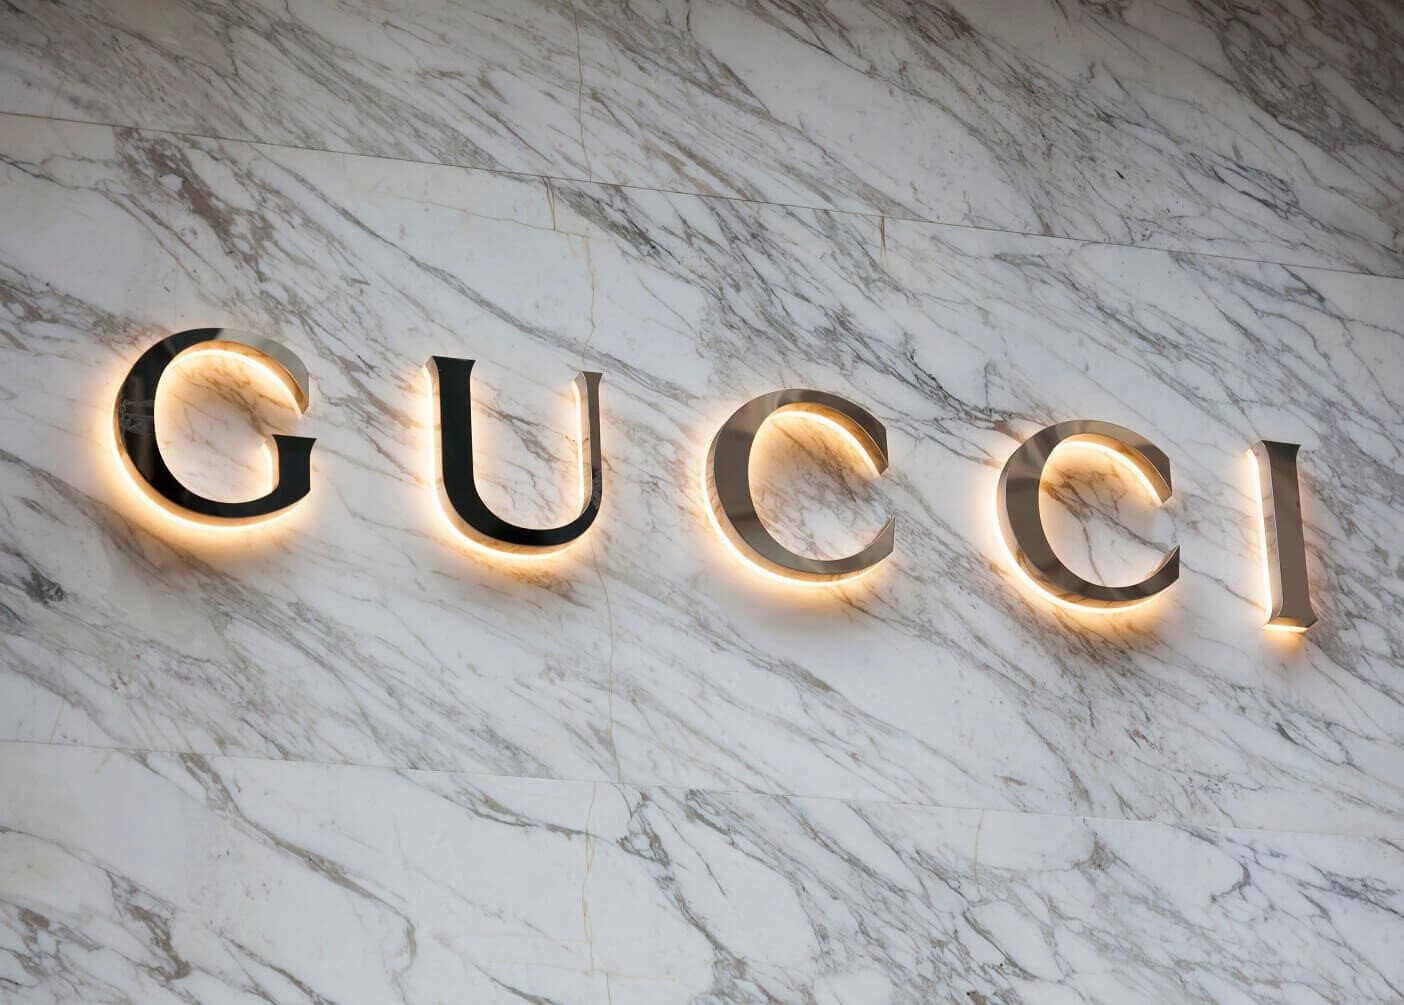 Gucci collabora con Yuga Labs, i creatori di Bored Ape Yacht Club, in un progetto legato al metaverso